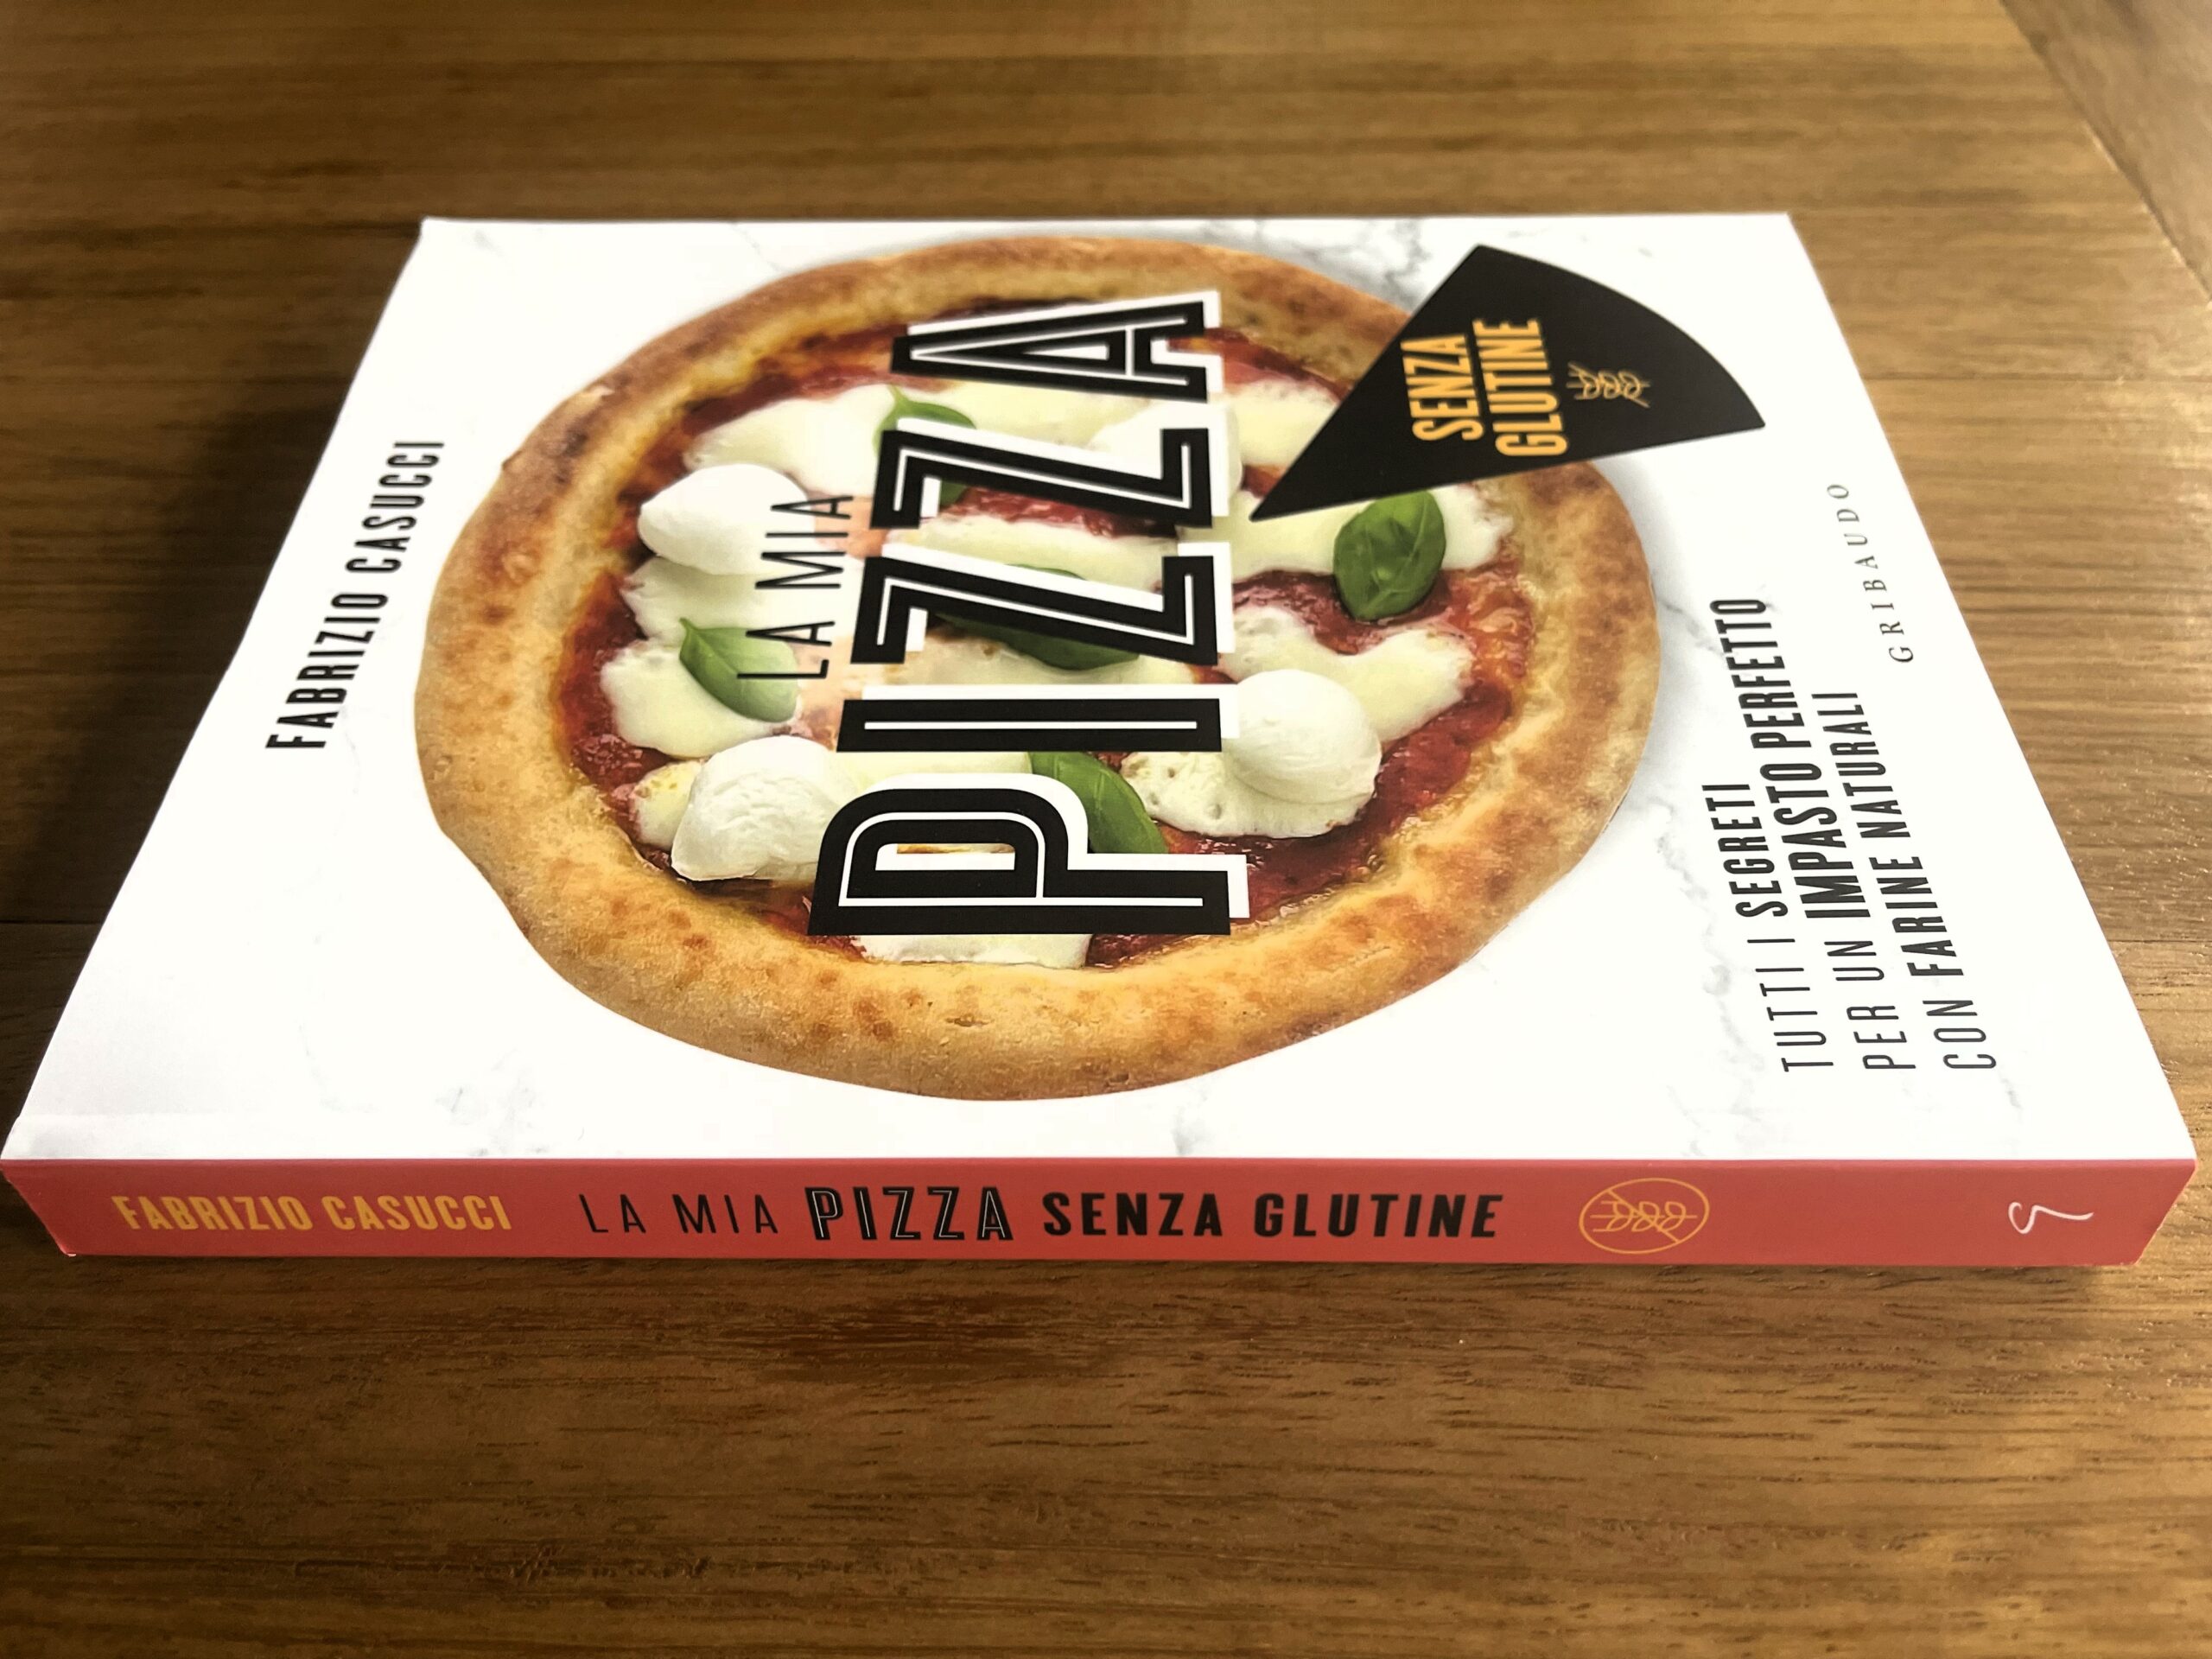 la mia pizza senza glutine di Fabrizio Casucci: i segreti per un gluten free perfetto